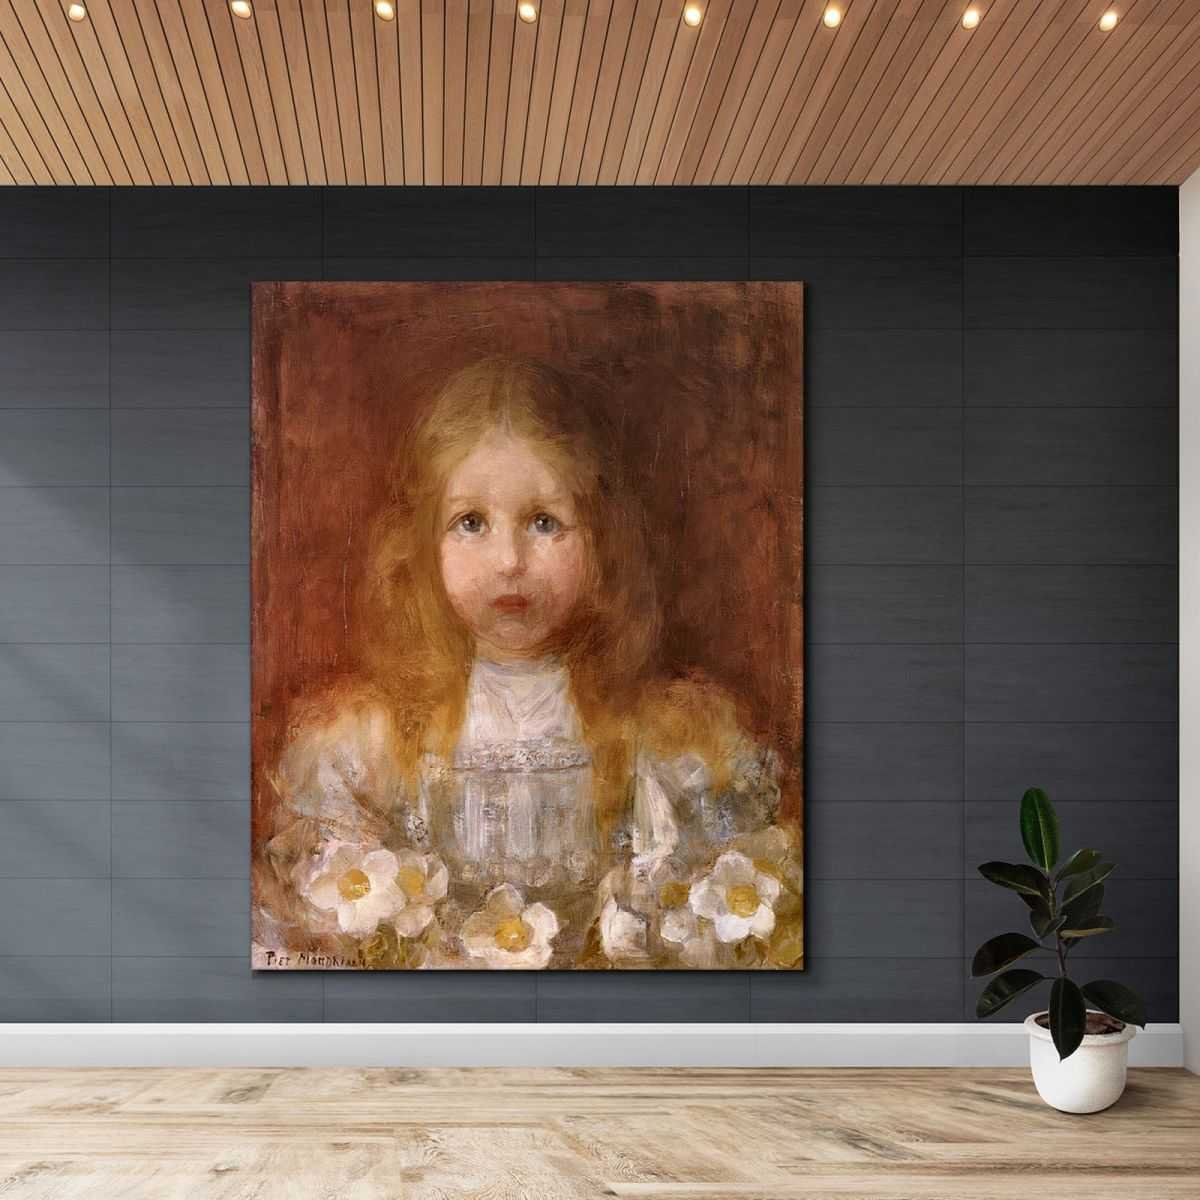 Ritratto Di Bambina Con Fiori Mondrian Piet quadro stampa su tela PMO36